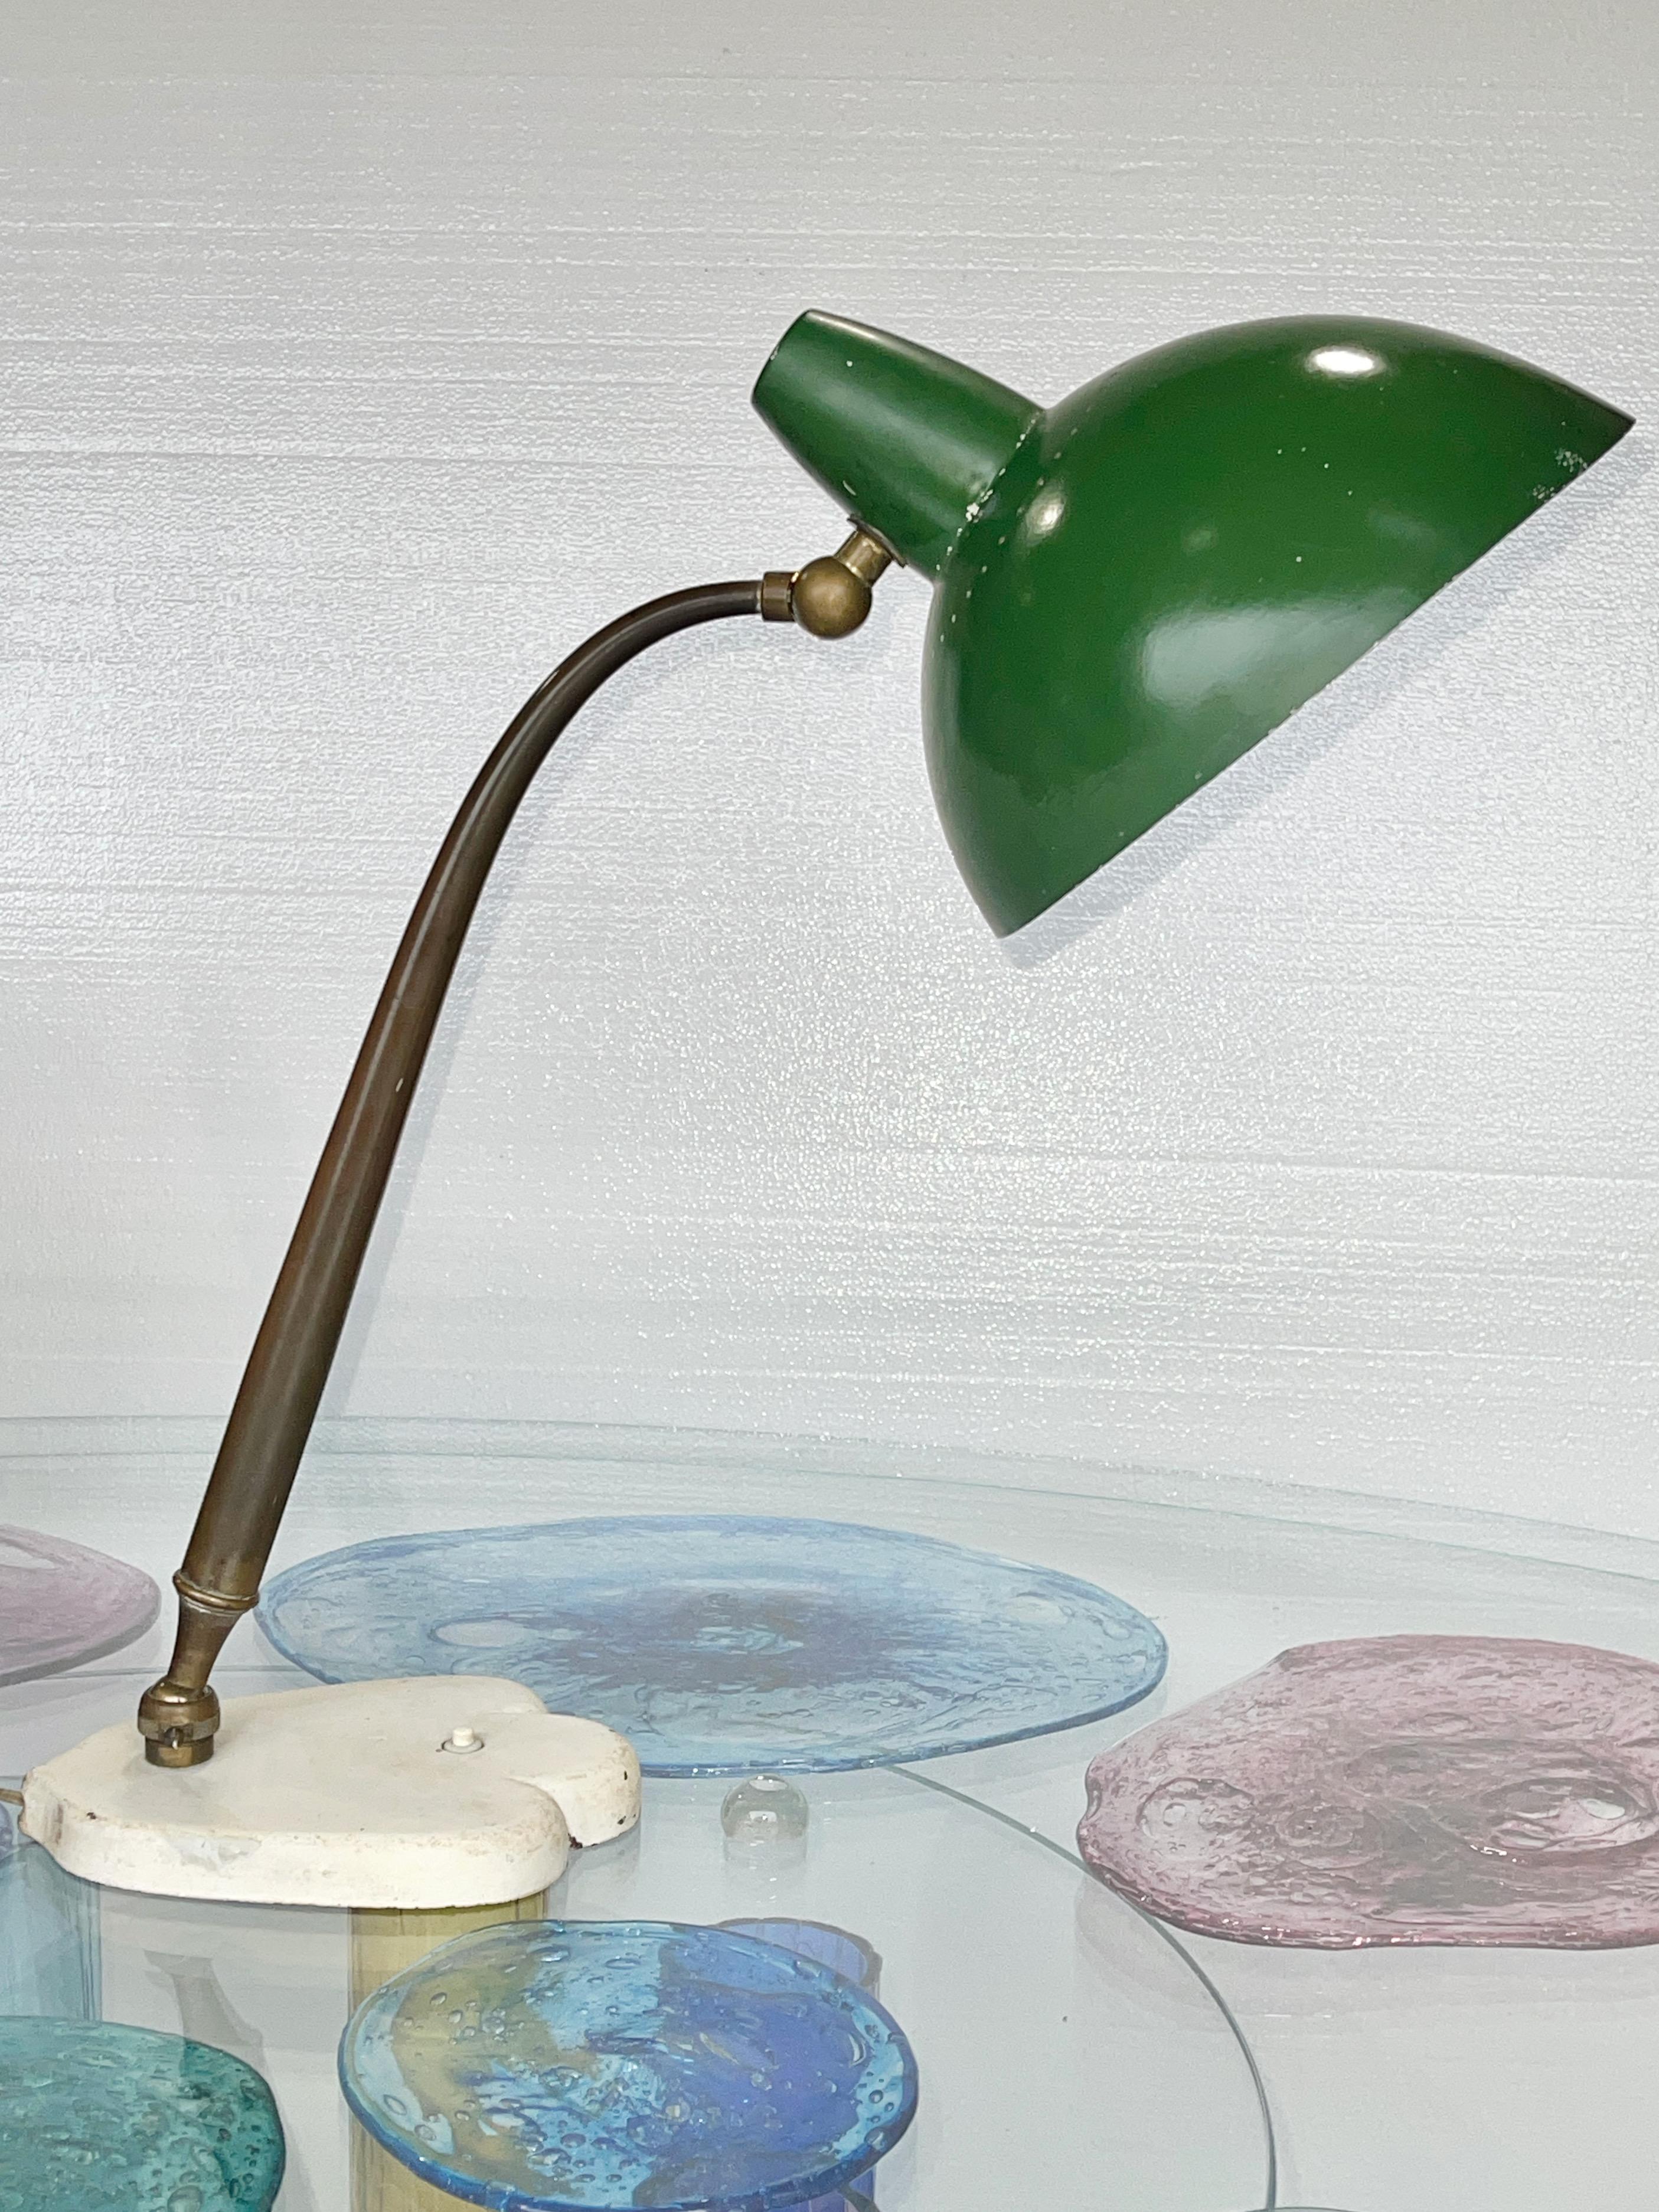 Rare lampe de table multidirectionnelle de Lumen Milano, probablement conçue par Oscar Torlasco, milieu des années 1940.
La tige en laiton allongée et conique, magnifiquement conçue, s'étire à partir d'un joint à rotule moleté fixé à une base en